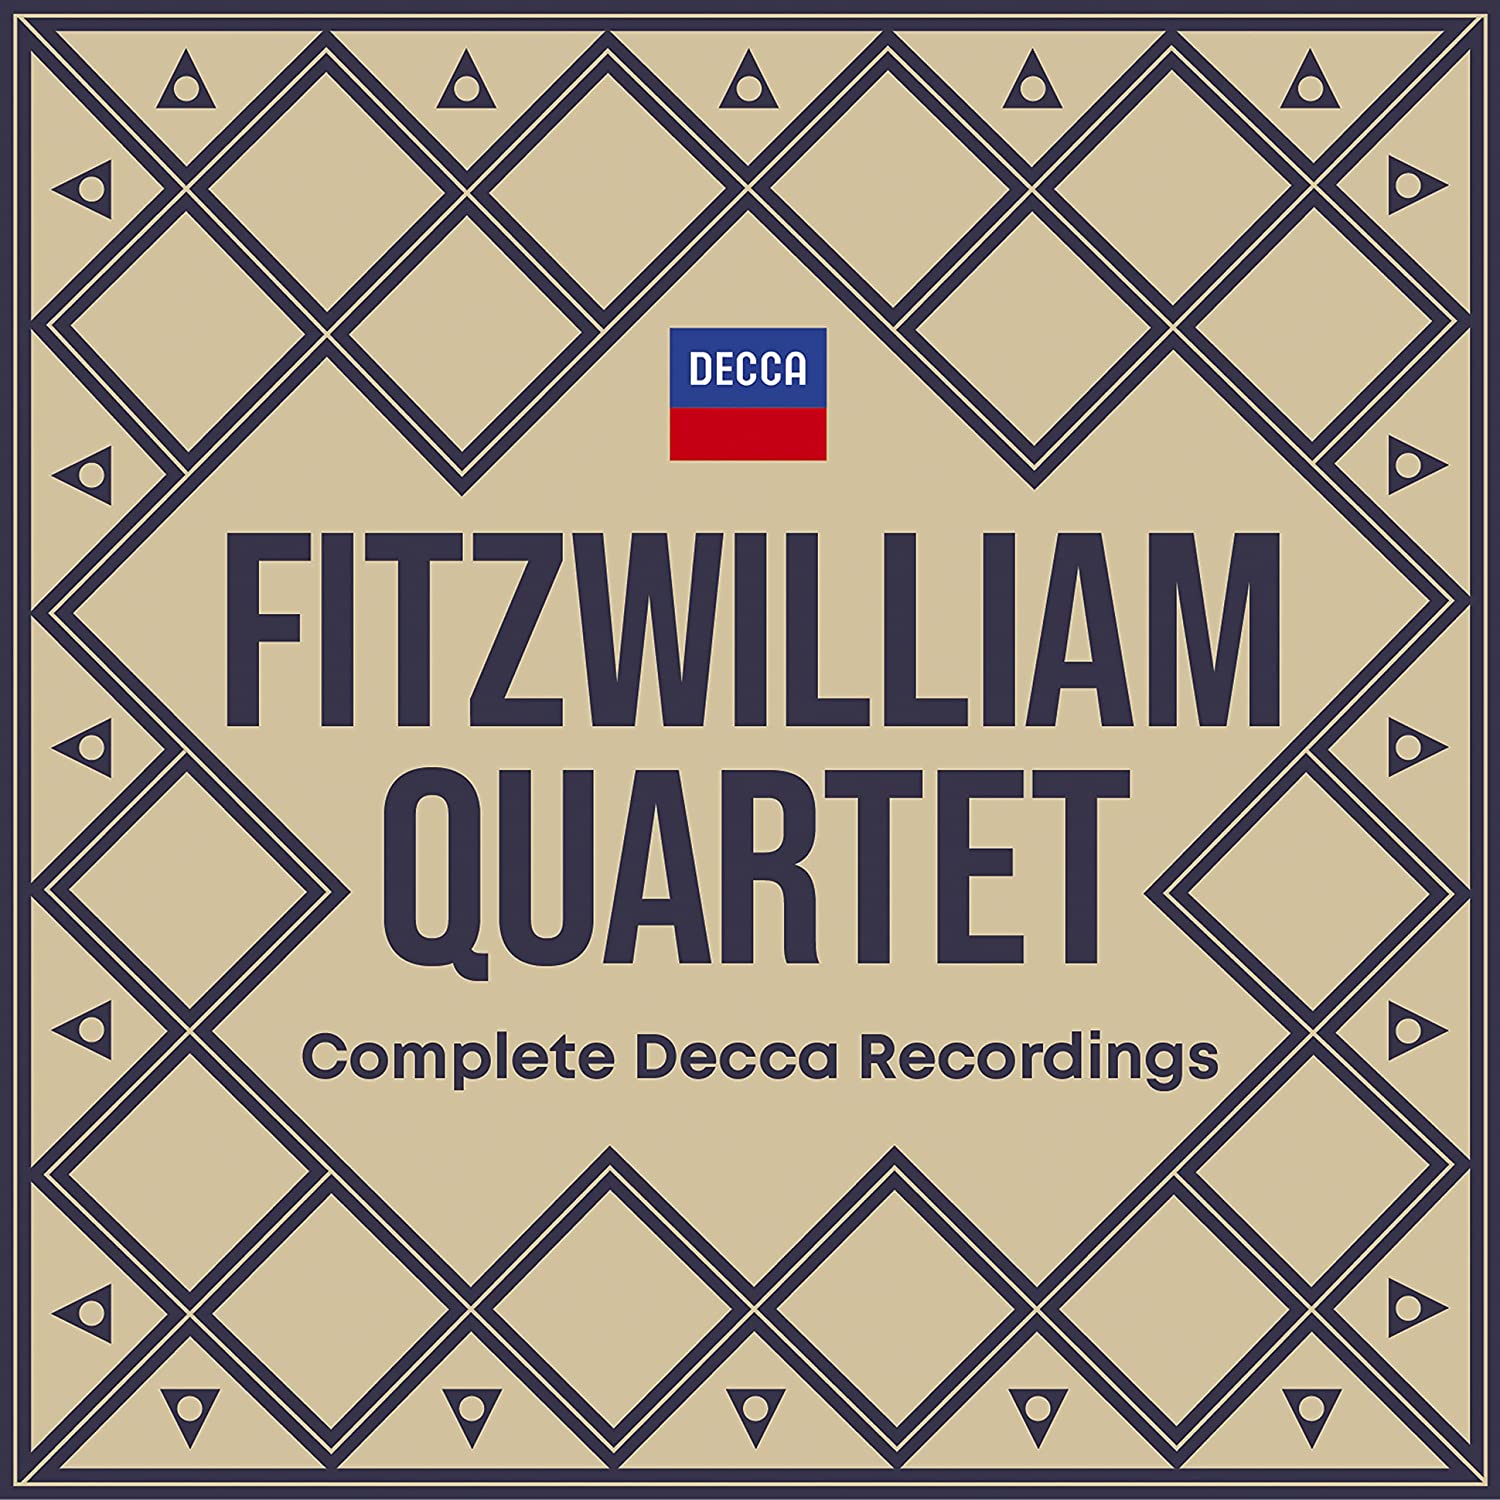 Fitzwilliam Quartet - Complete Decca Recordings (Box Set) | Fitzwilliam Quartet